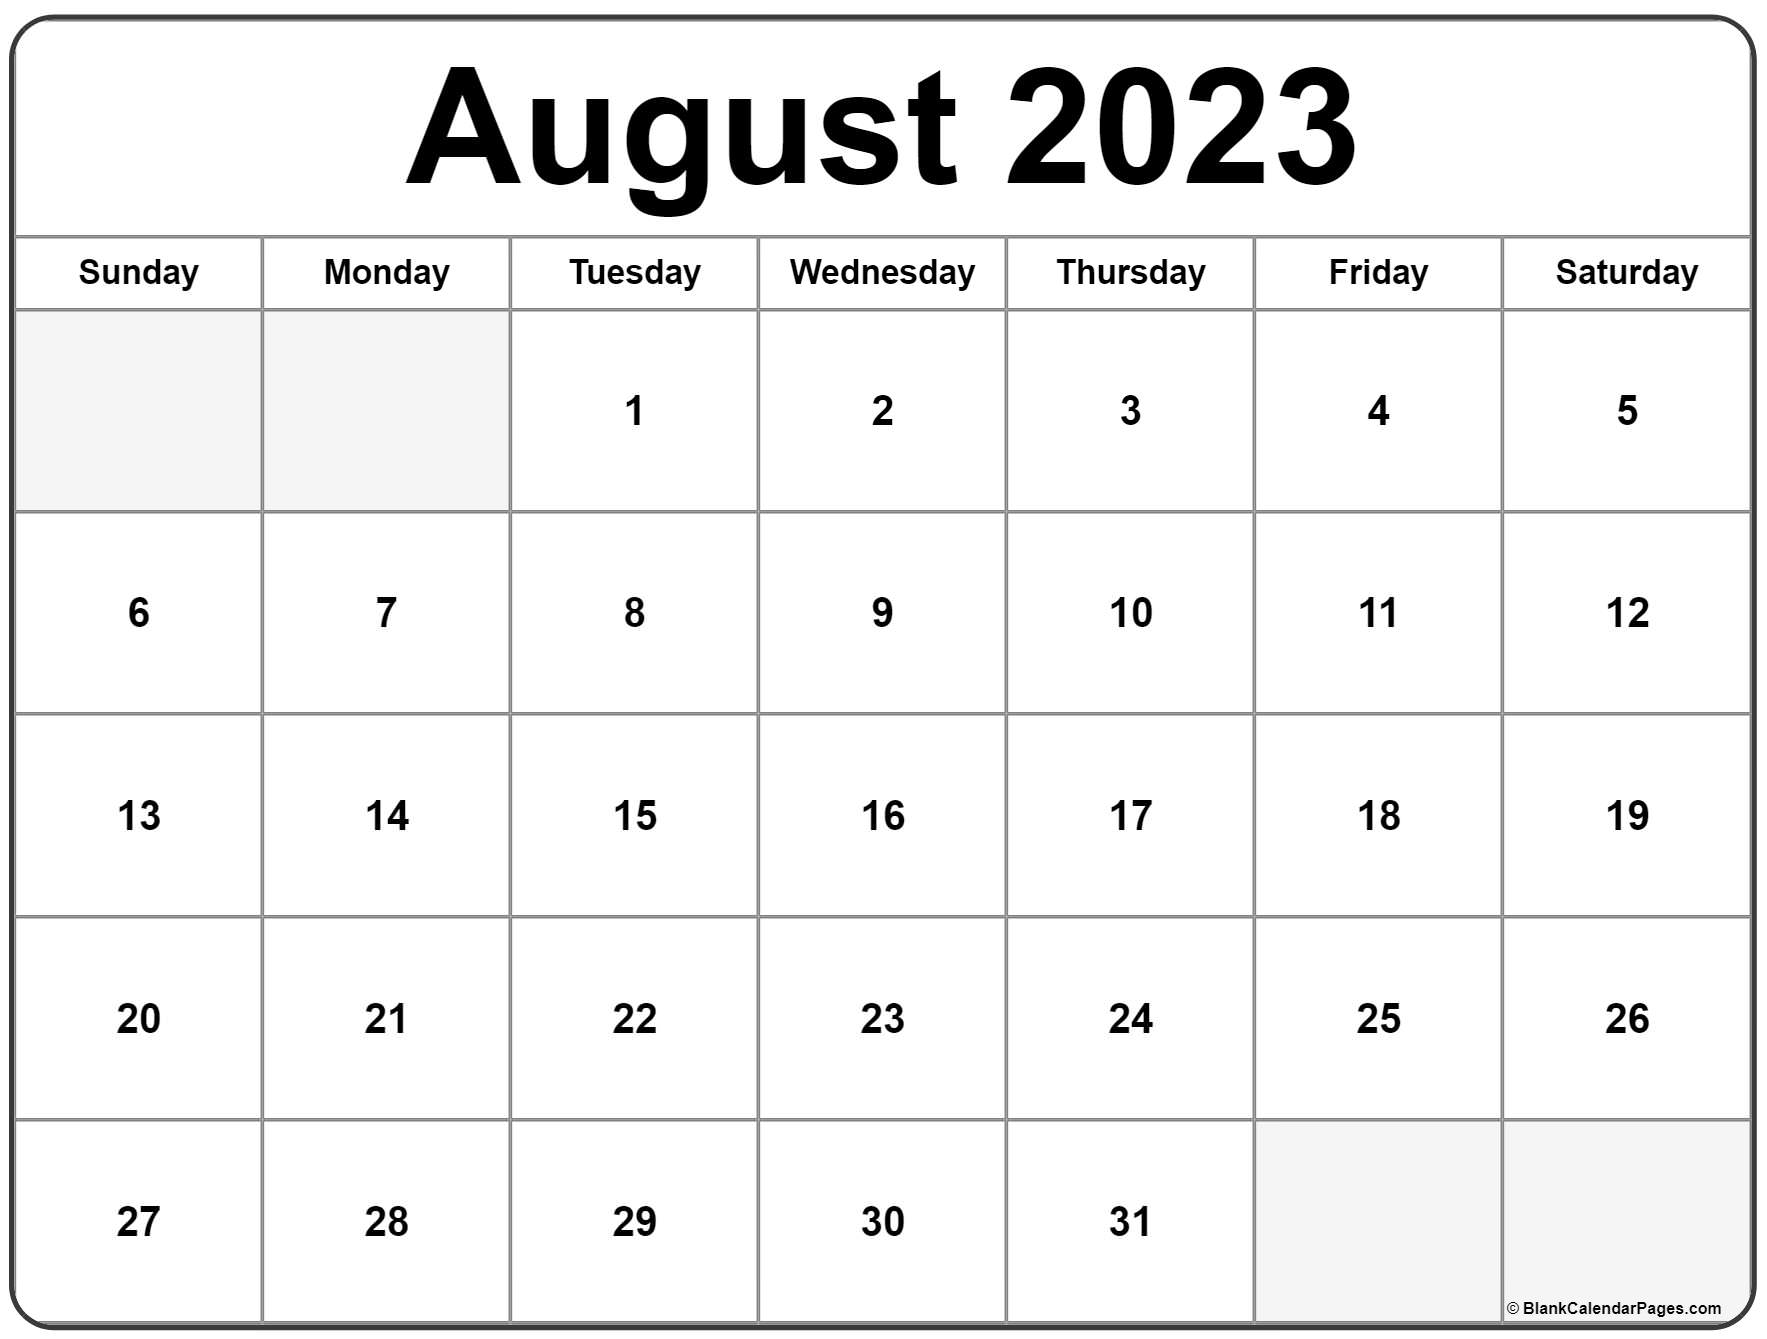 Расписание август 2023. Календарь август 2022. Календарь июнь 2022. Календарь июль август 2022. Календарь на август 2022 года.